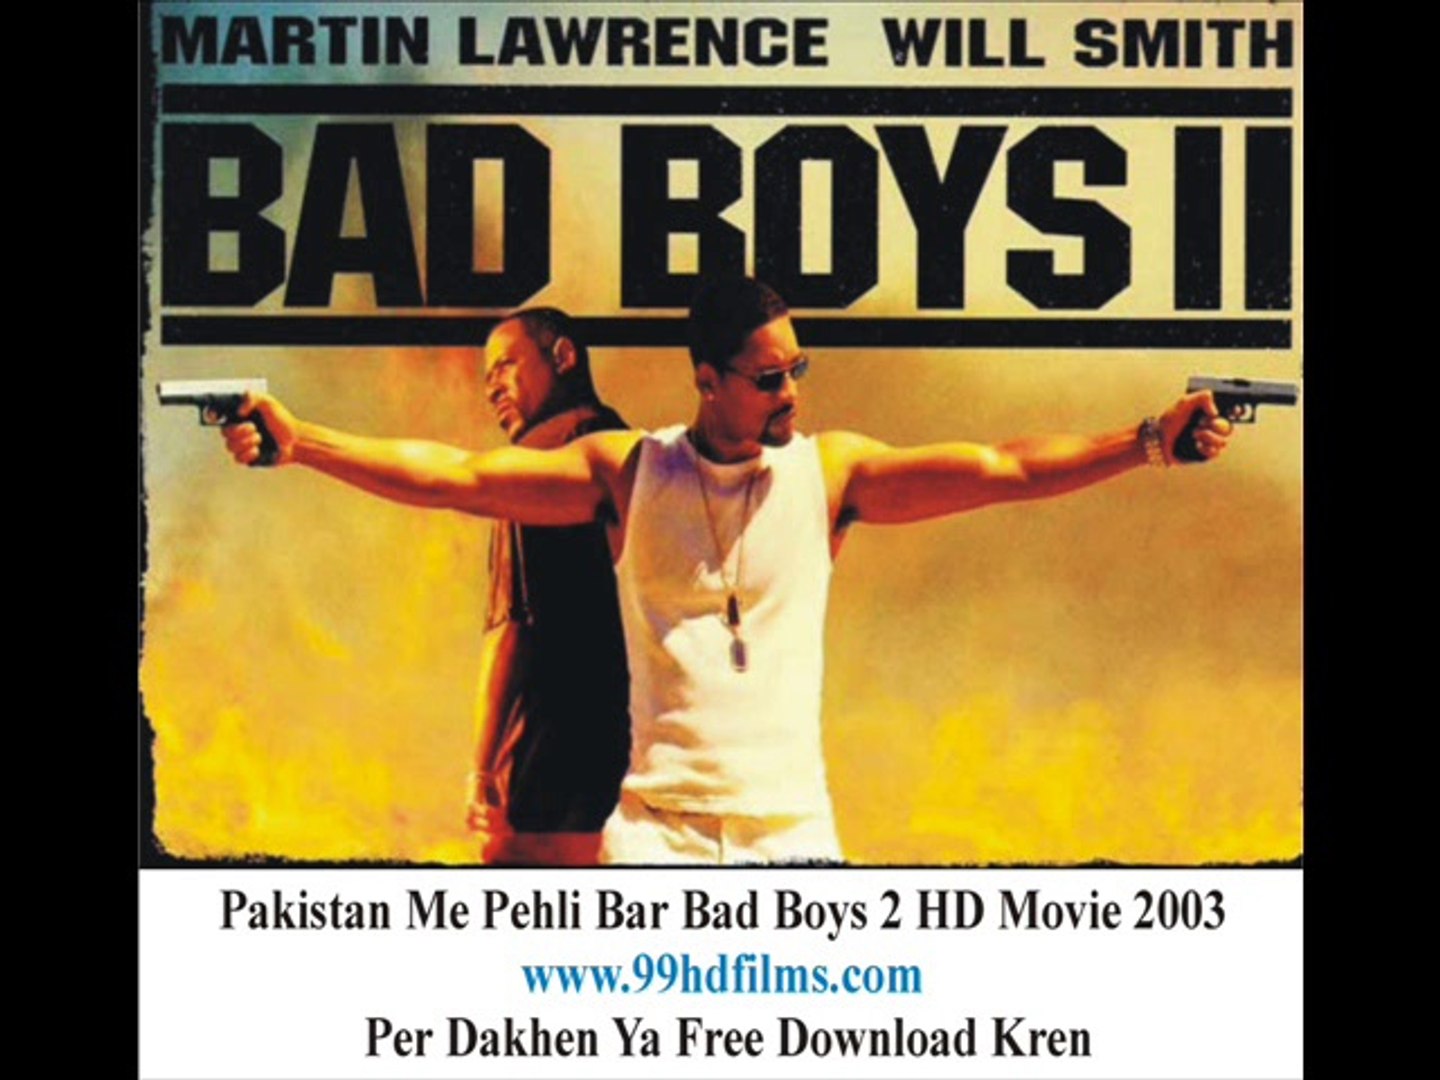 debra colvin recommends Bad Boys 2 Full Movie Download